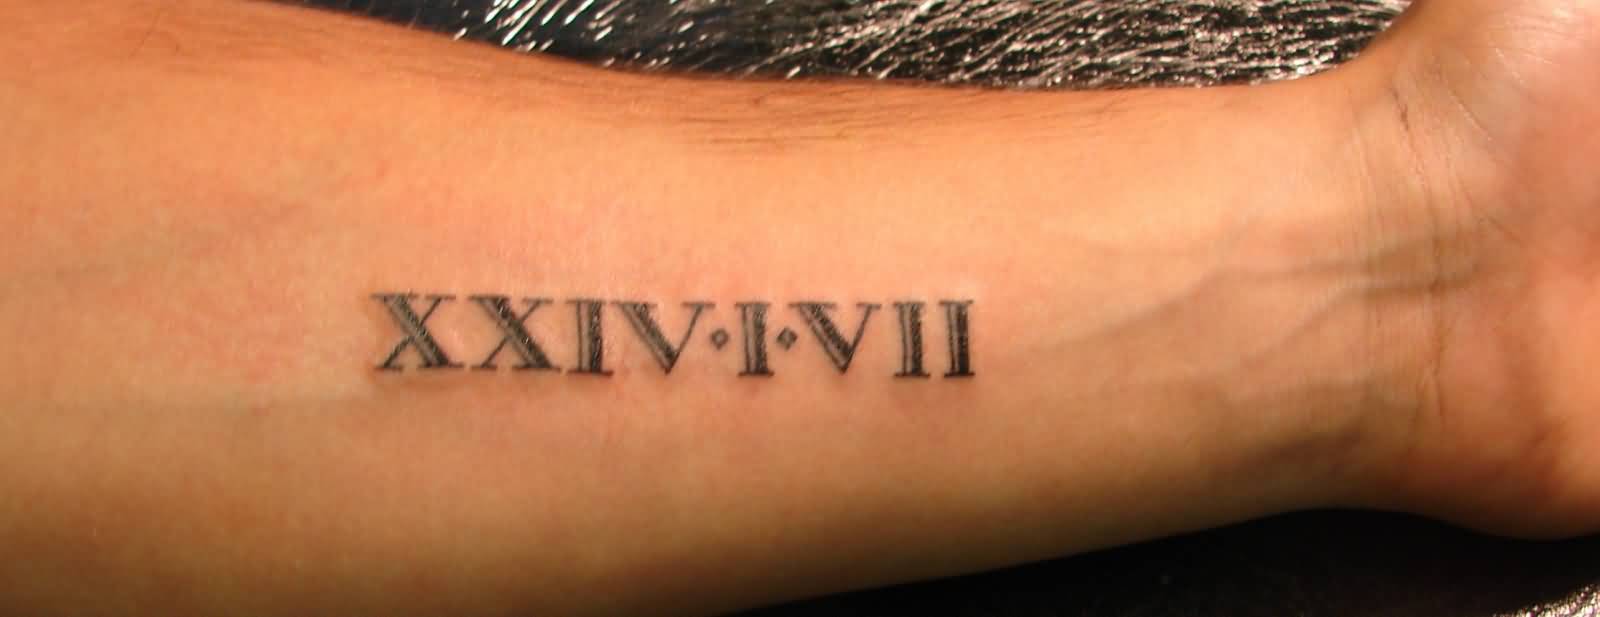 Nice Roman Numbers Tattoo On Forearm